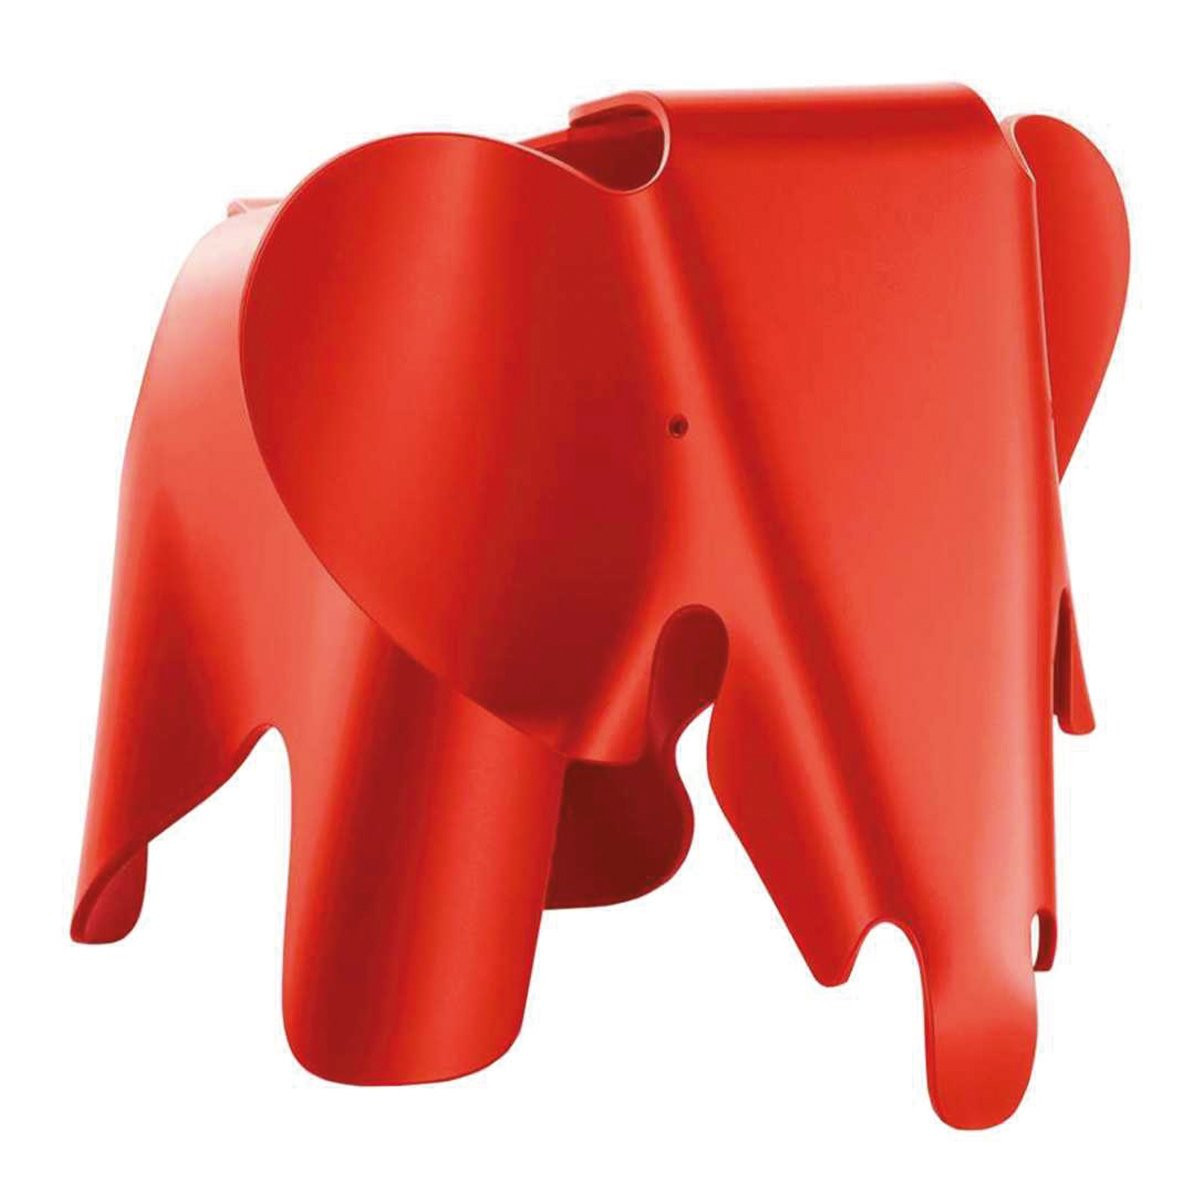 Vitra Eames Elephant - Poppy Rood